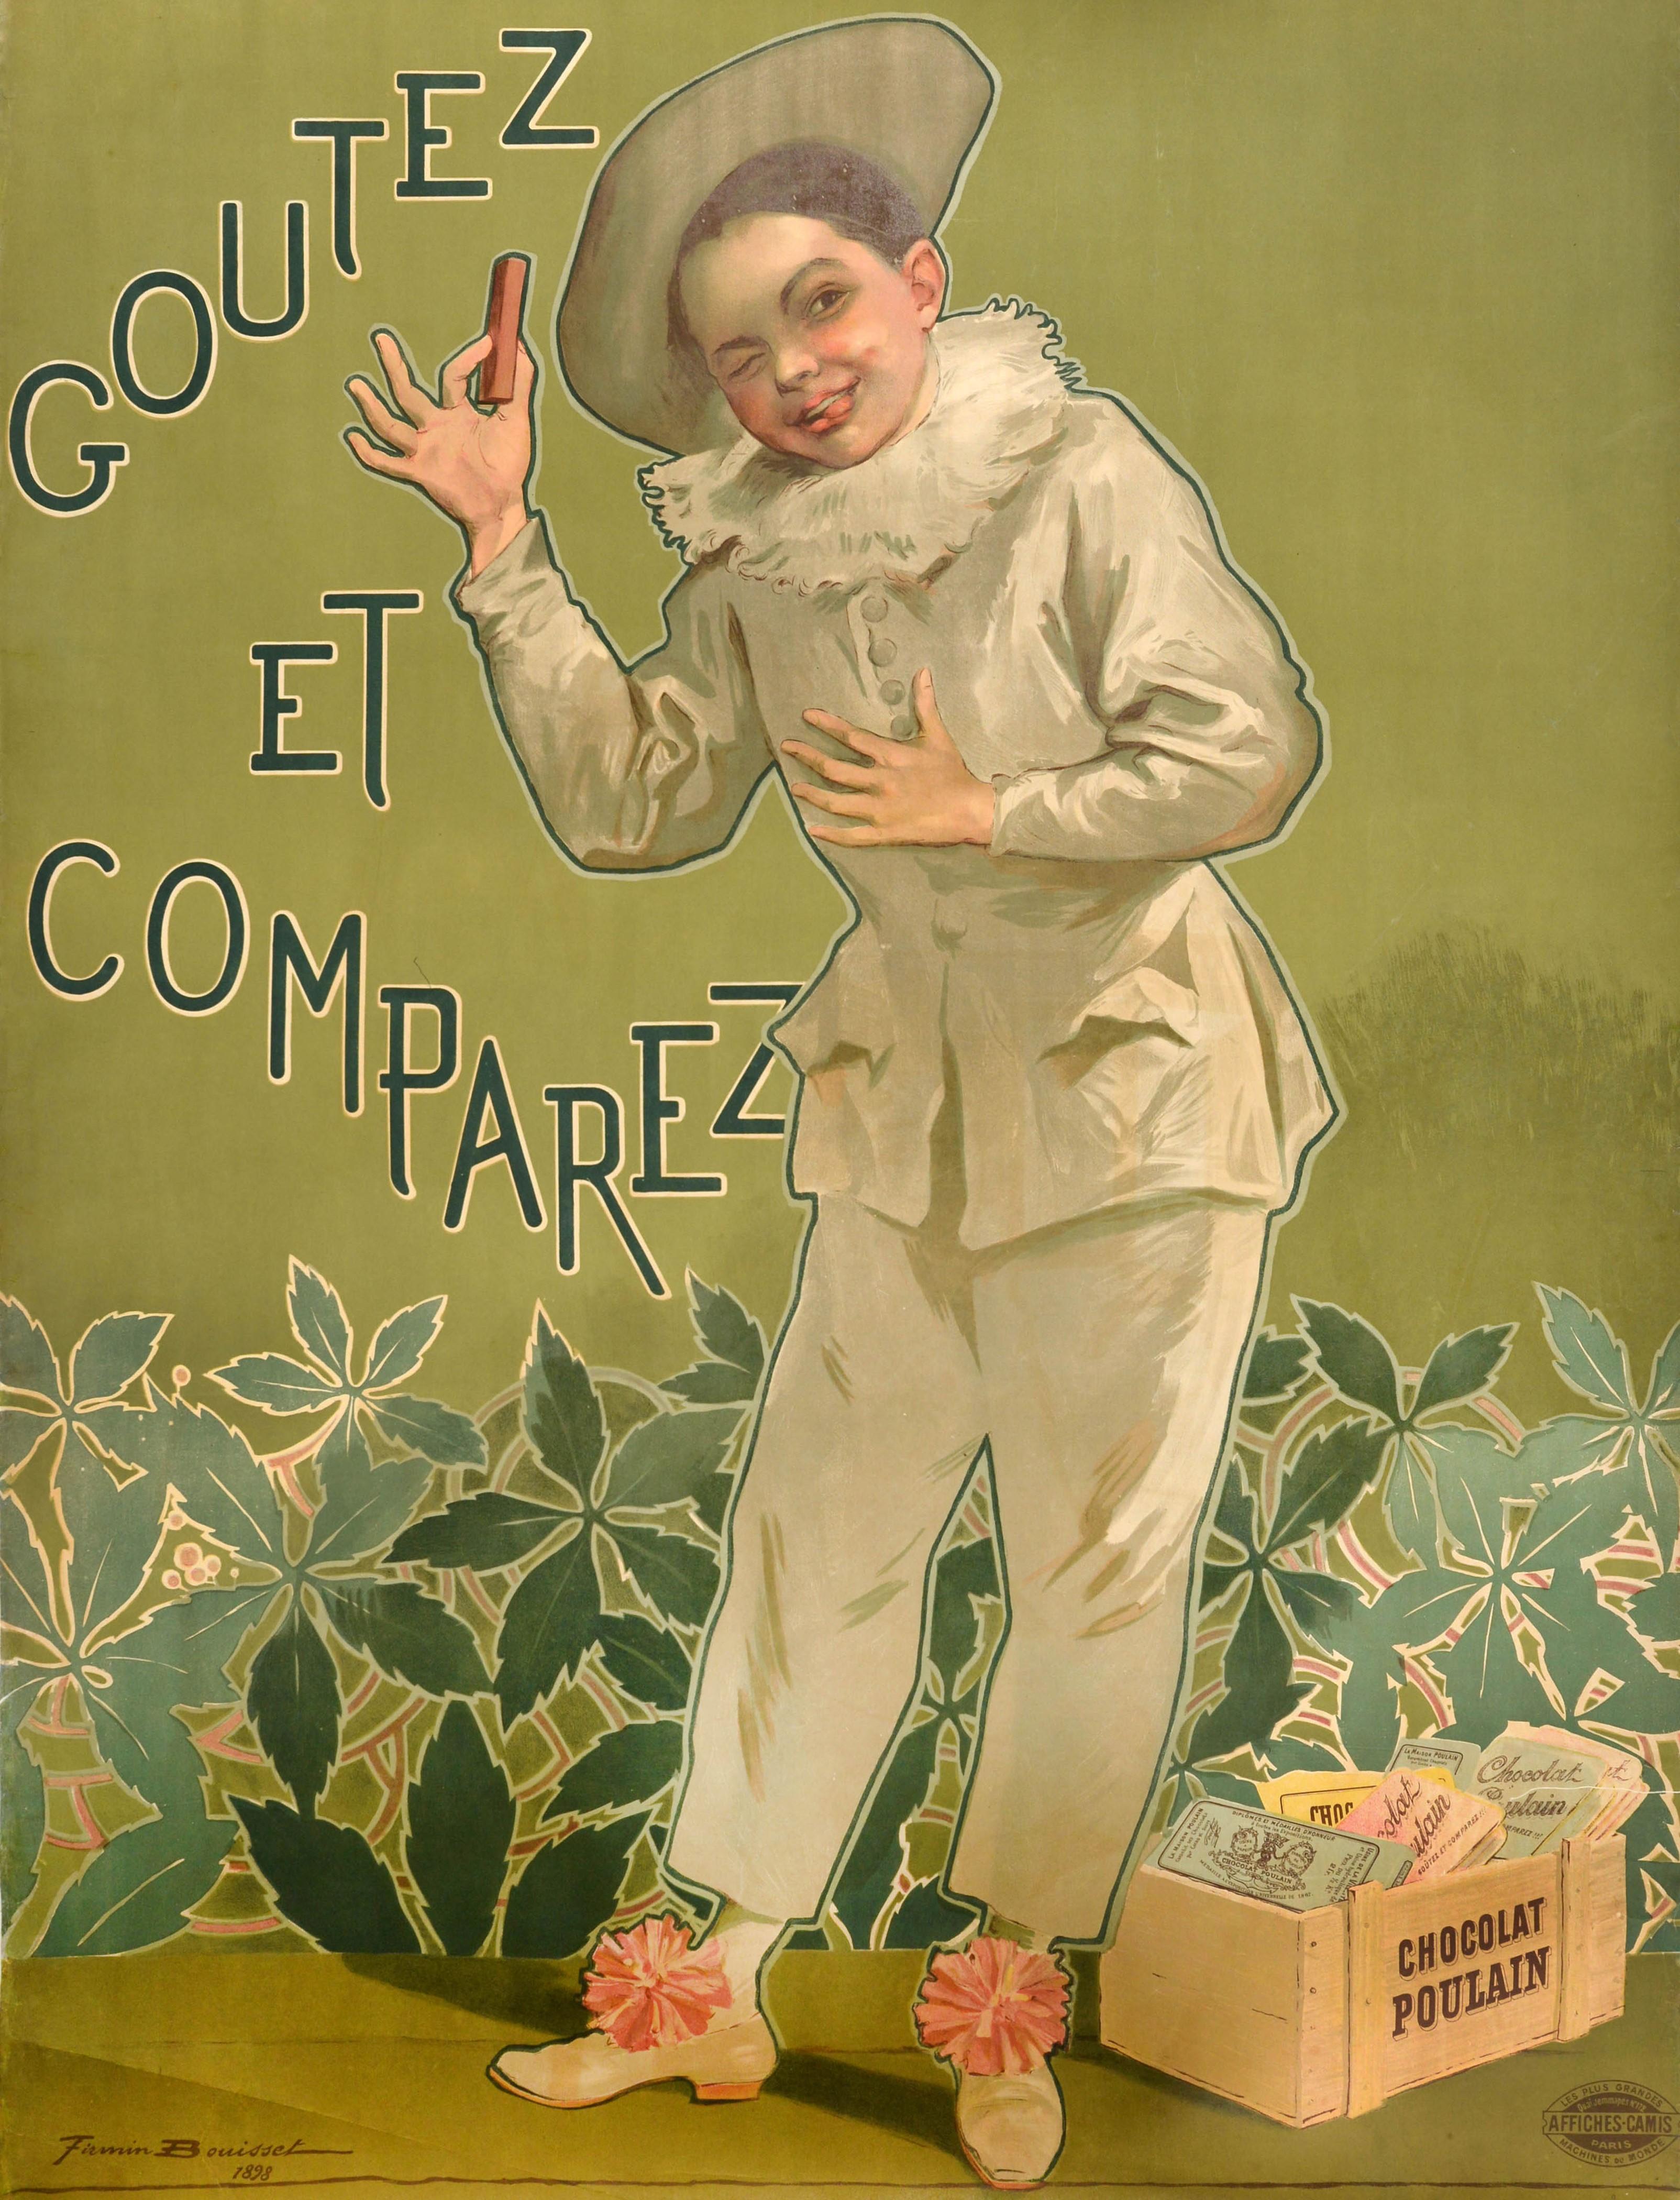 Affiche publicitaire originale pour le Chocolat Poulain Goutez et compare / Taste and Compare représentant un jeune garçon vêtu de blanc, portant un chapeau et des nœuds sur ses chaussures, tirant malicieusement la langue et faisant un clin d'œil au